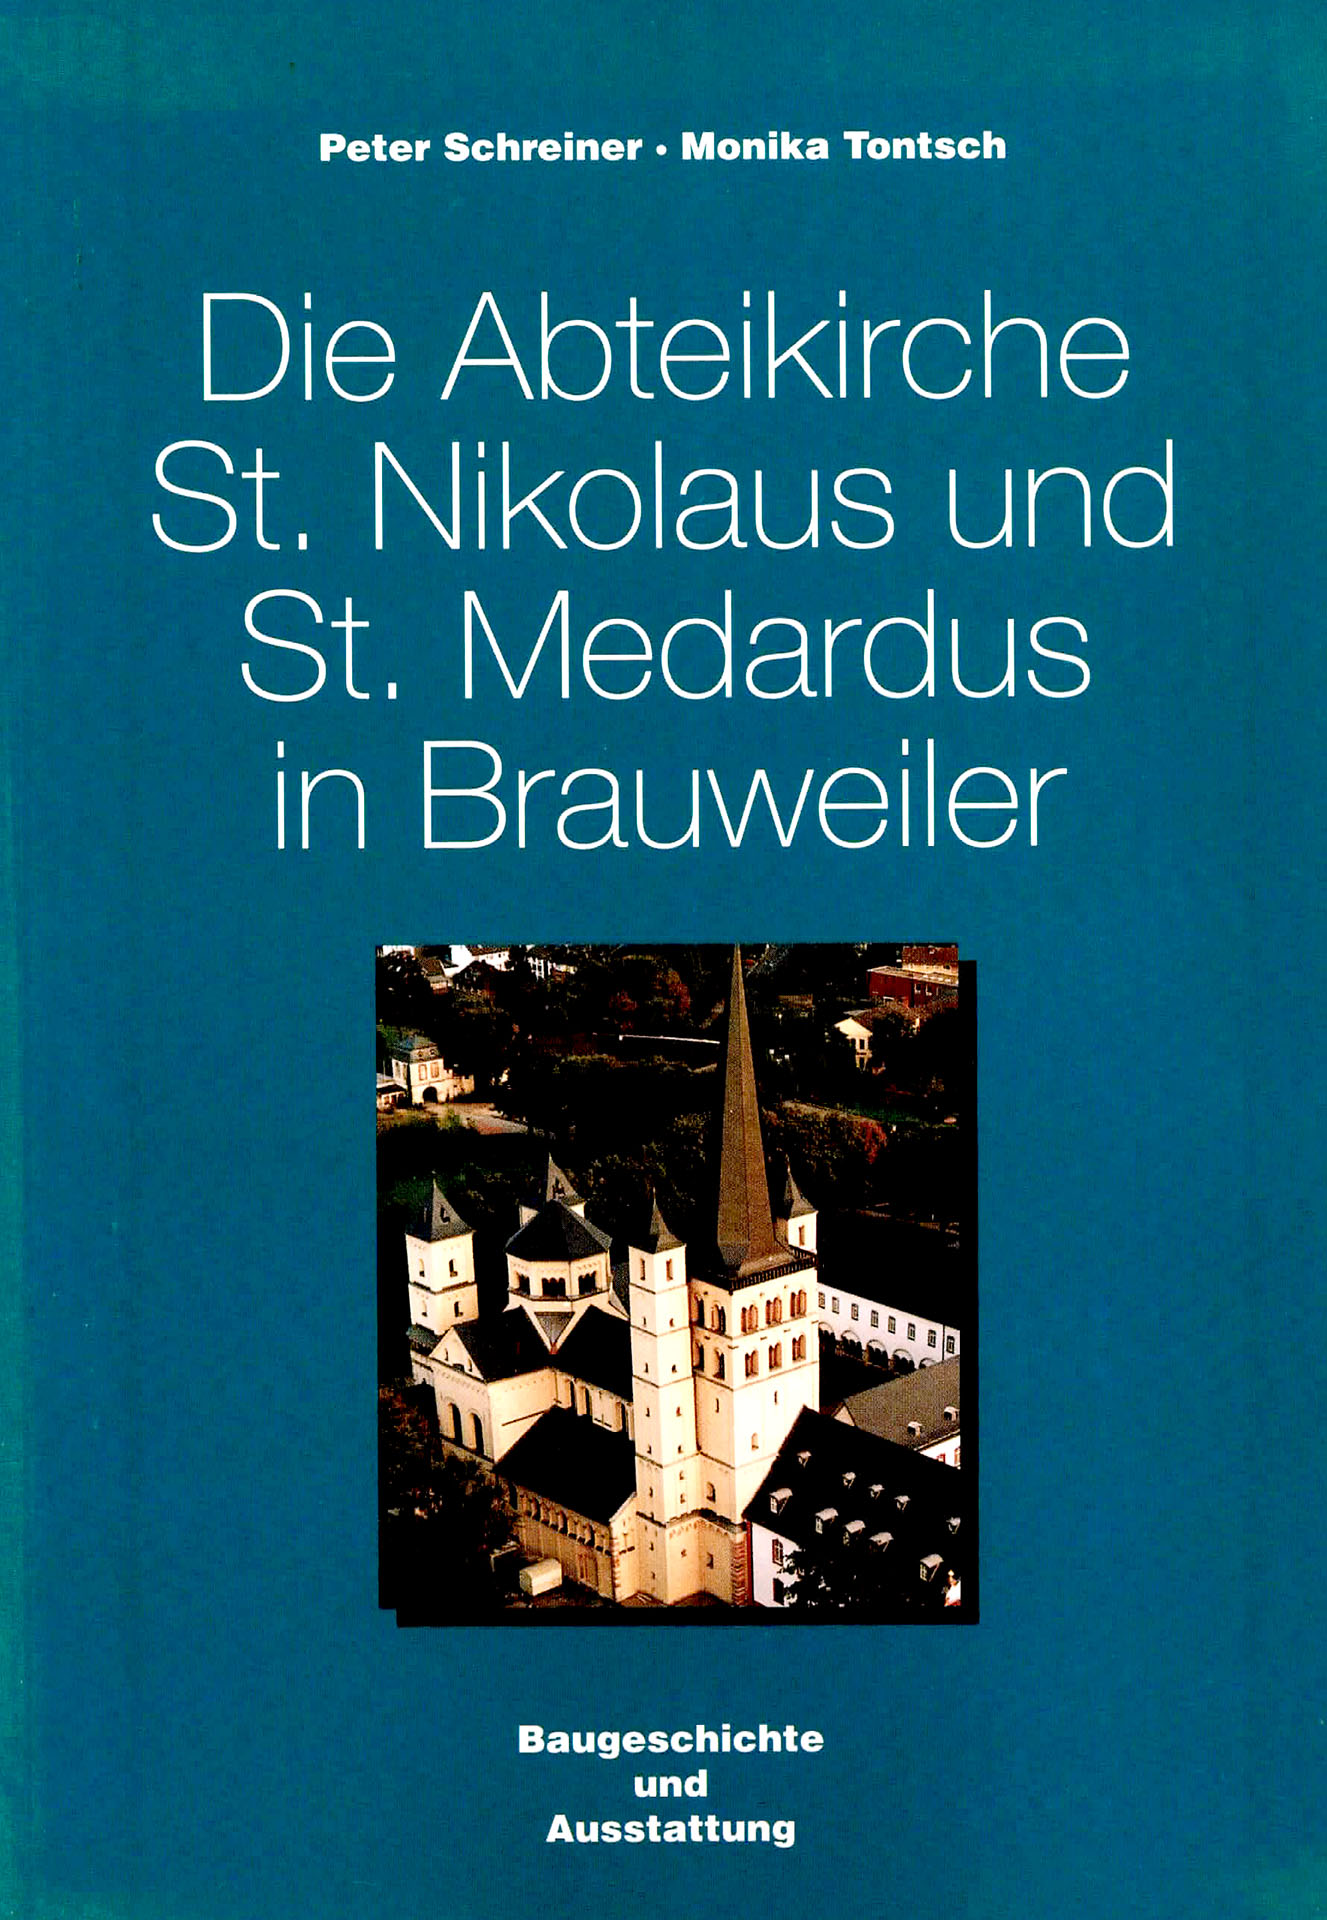 Die Abteikirche St. Nikolaus und St. Medardus in Brauweiler - Tontsch, Monika / Schreiner, Peter